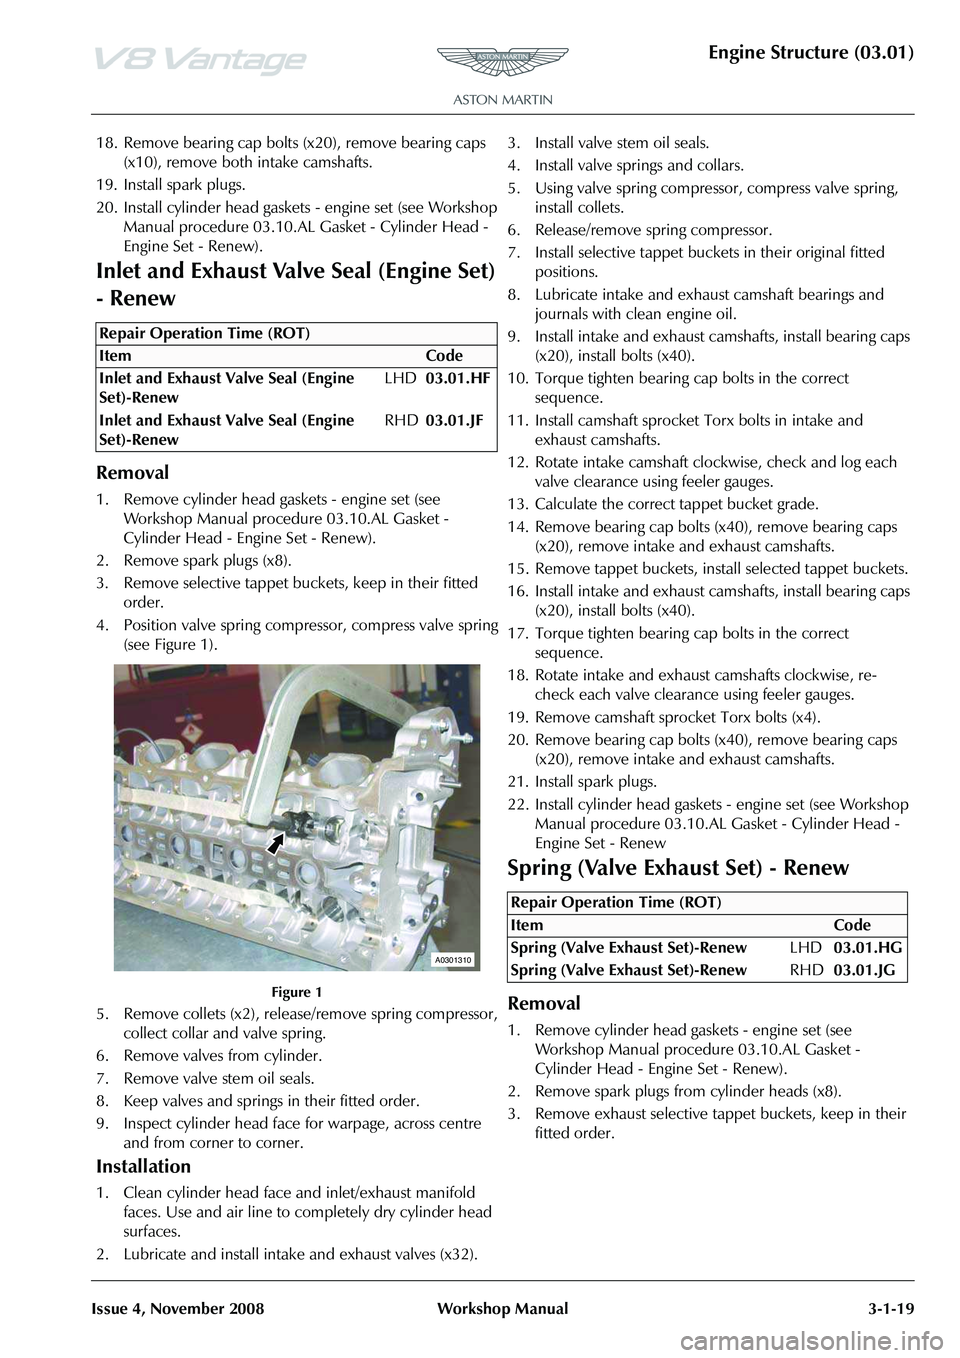 ASTON MARTIN V8 VANTAGE 2010  Workshop Manual Engine Structure (03.01)
Issue 4, November 2008Workshop Manual 3-1-19
18. Remove bearing cap bolts (x20), remove bearing caps 
(x10), remove both intake camshafts.
19. Install spark plugs.
20. Install